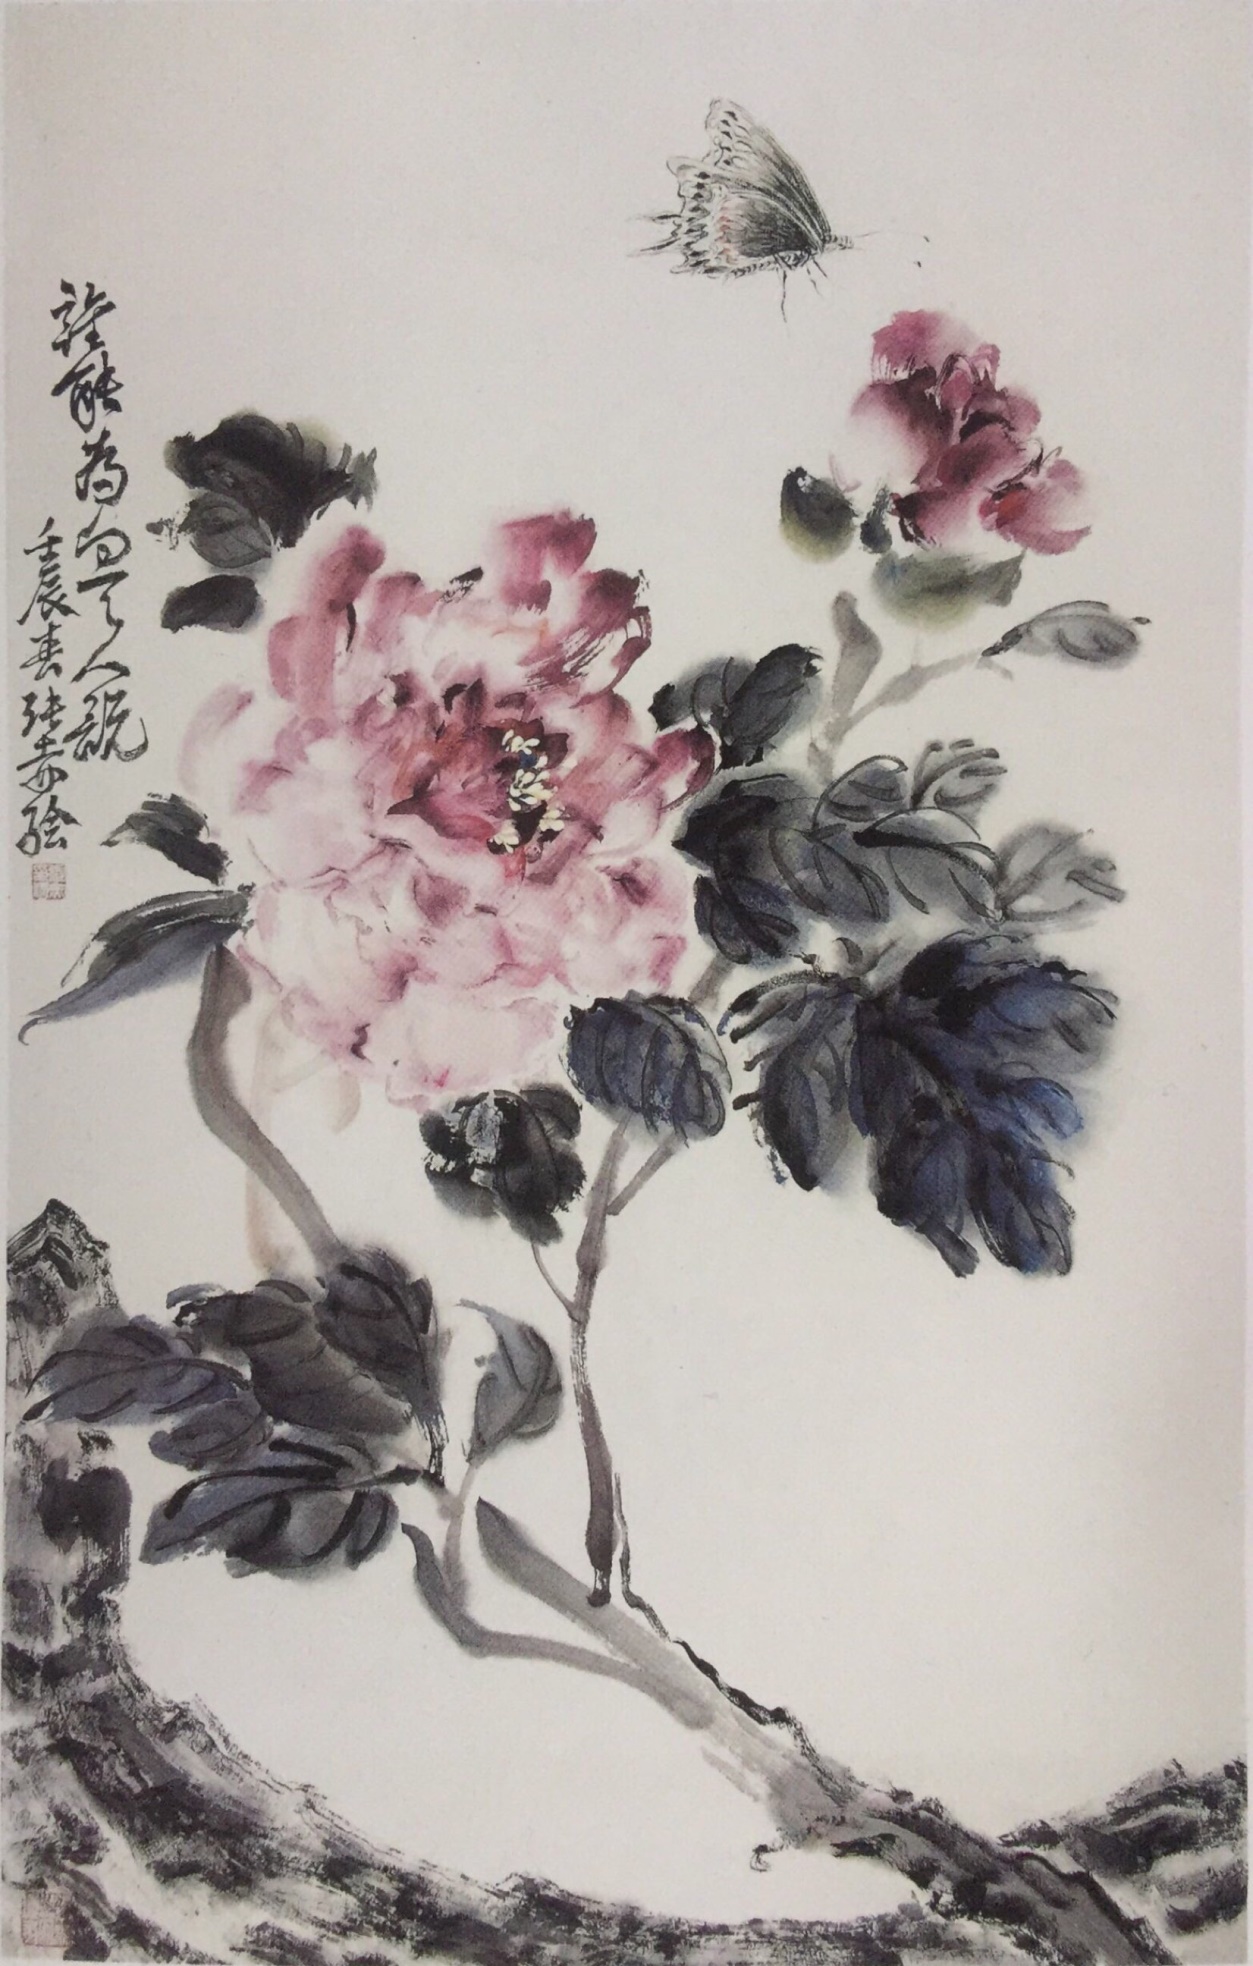 中国美术学院美术考级花鸟画考级八级(高级)示范图例。